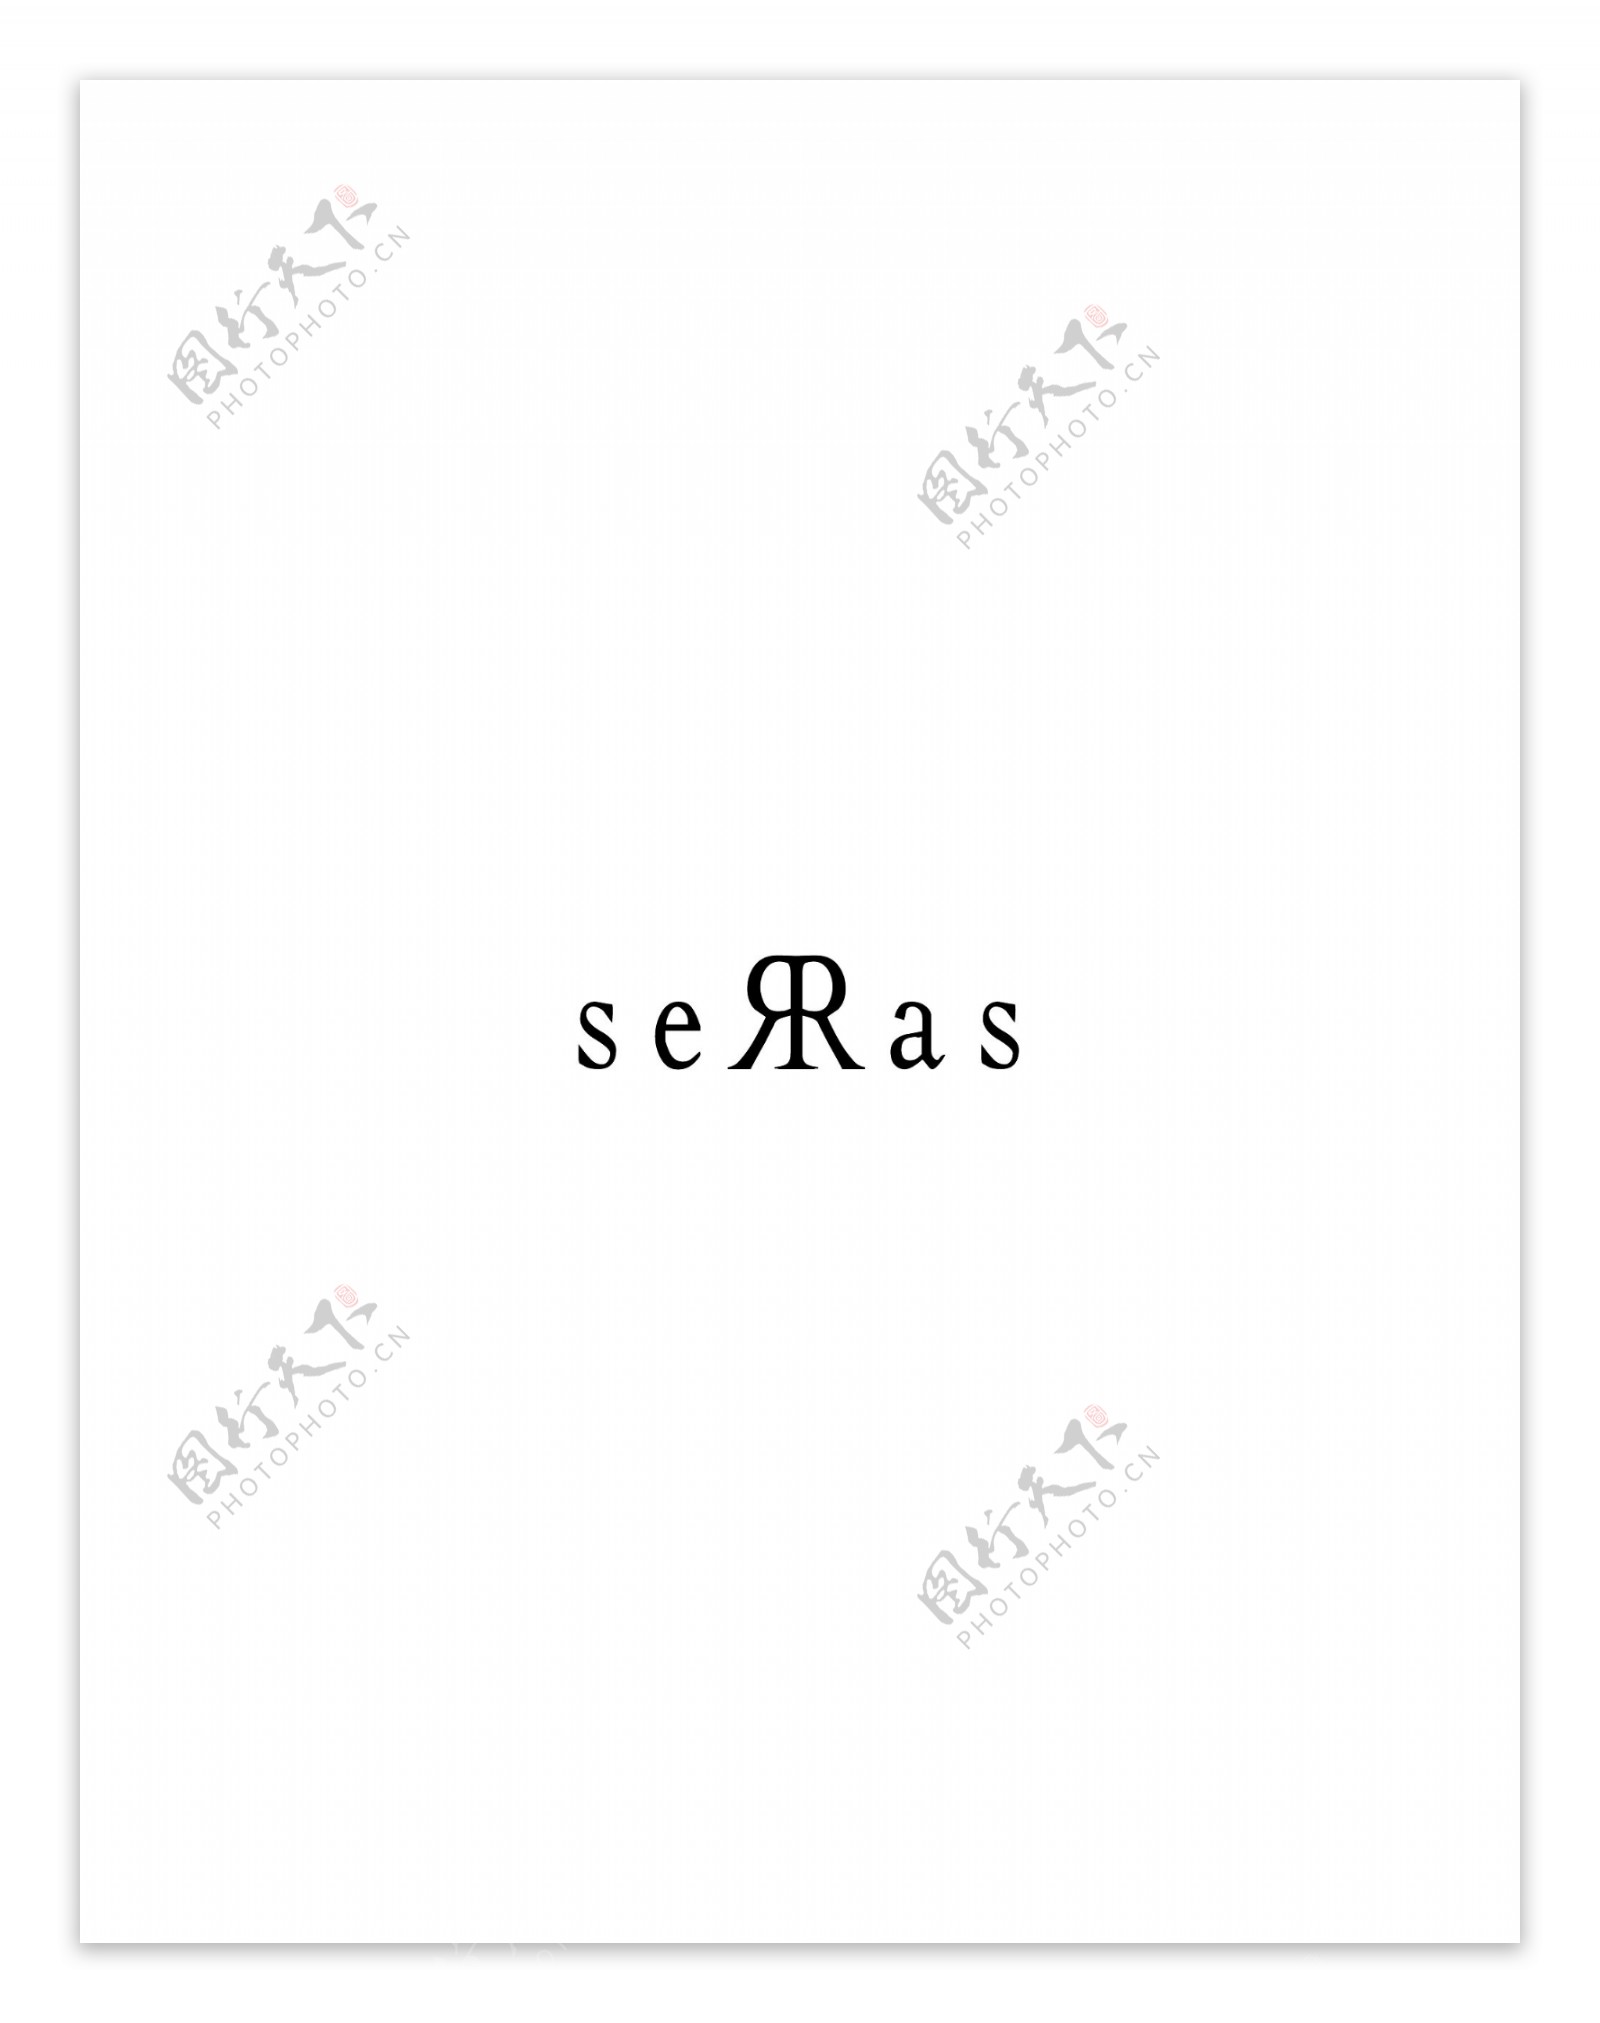 Serraslogo设计欣赏网站标志设计Serras下载标志设计欣赏